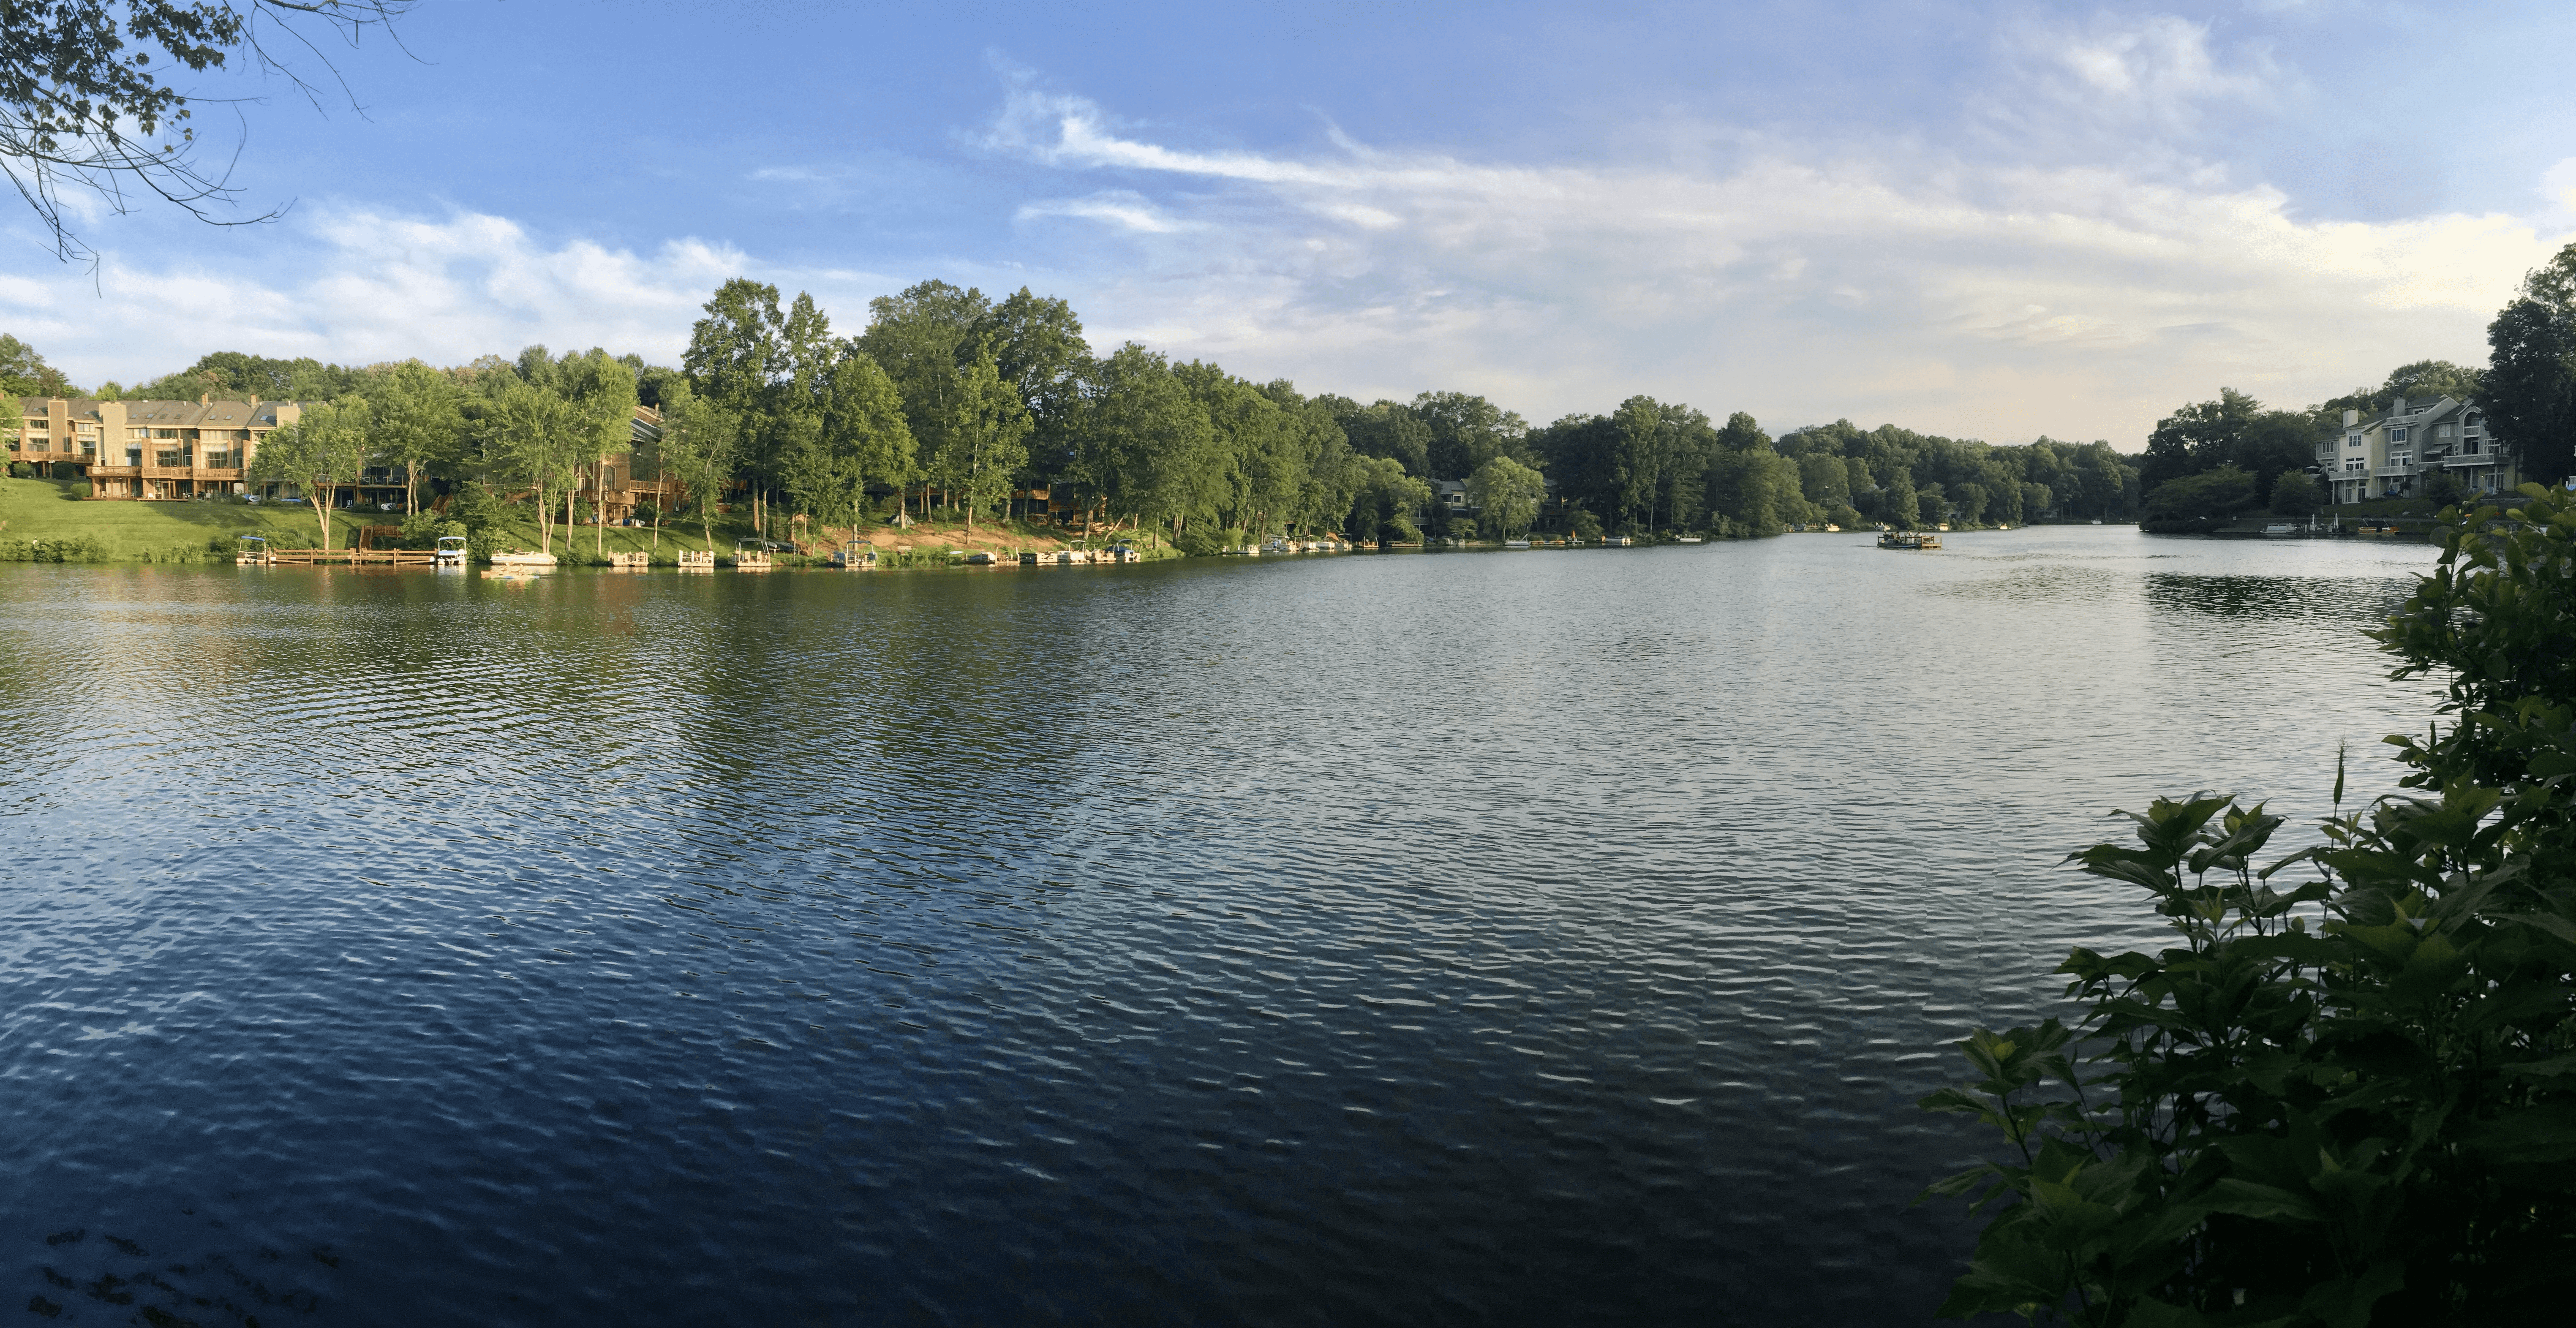 A view of Lake Audubon